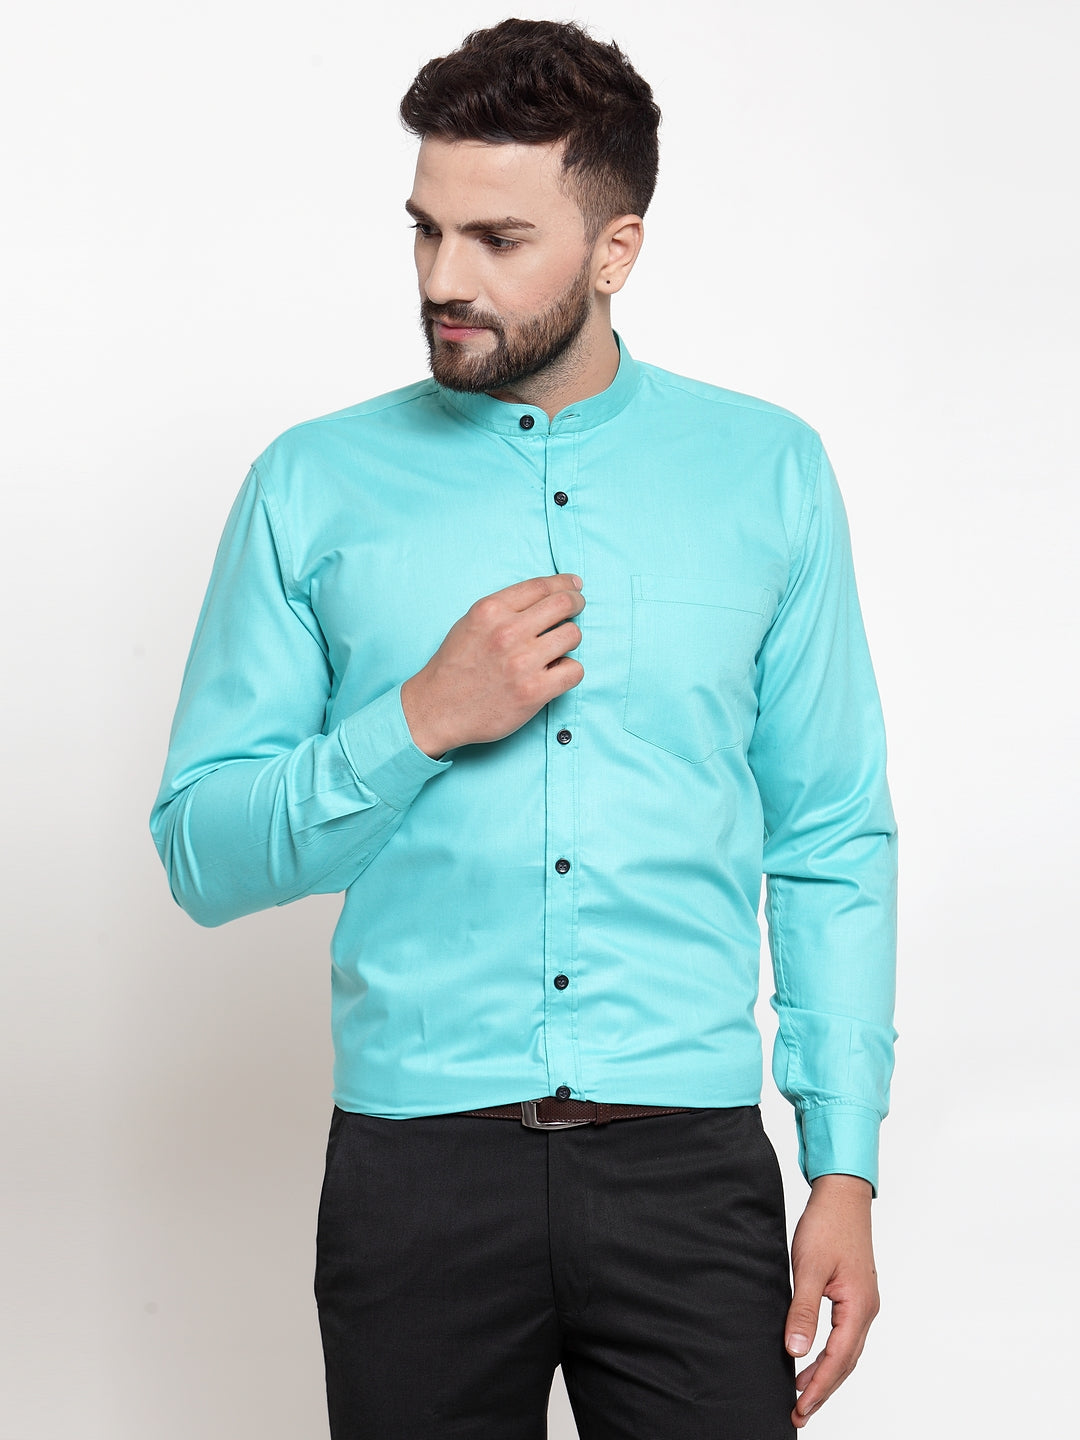 Men's Green Cotton Solid Mandarin Collar Formal Shirts ( SF 726Aqua ) - Jainish